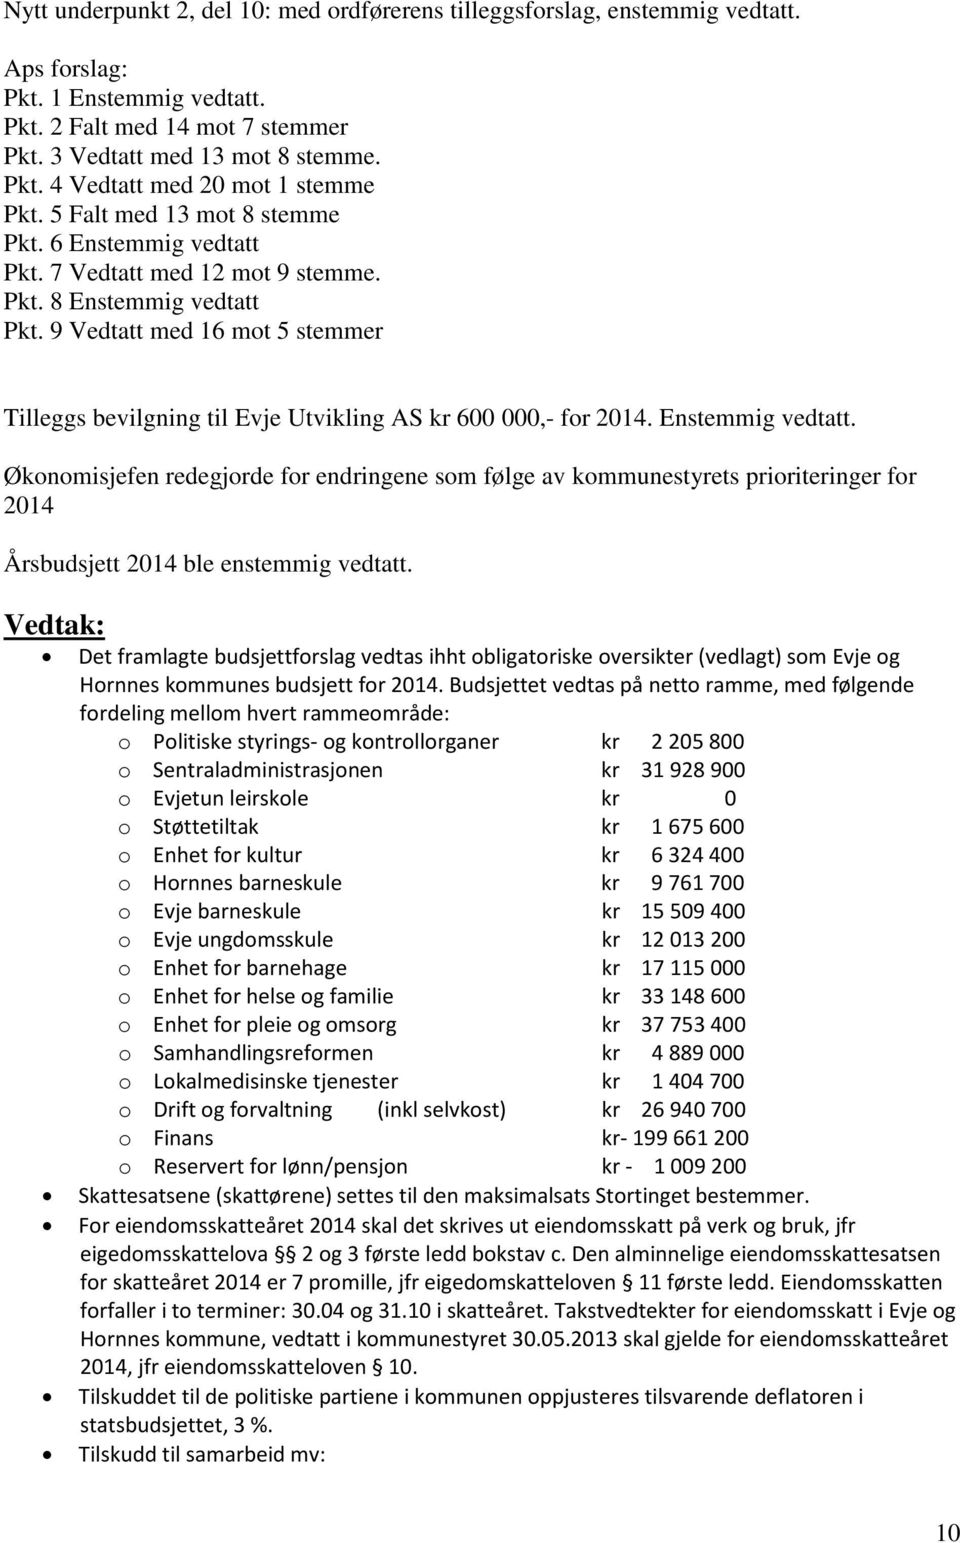 9 Vedtatt med 16 mot 5 stemmer Tilleggs bevilgning til Evje Utvikling AS kr 600 000,- for 2014. Enstemmig vedtatt.